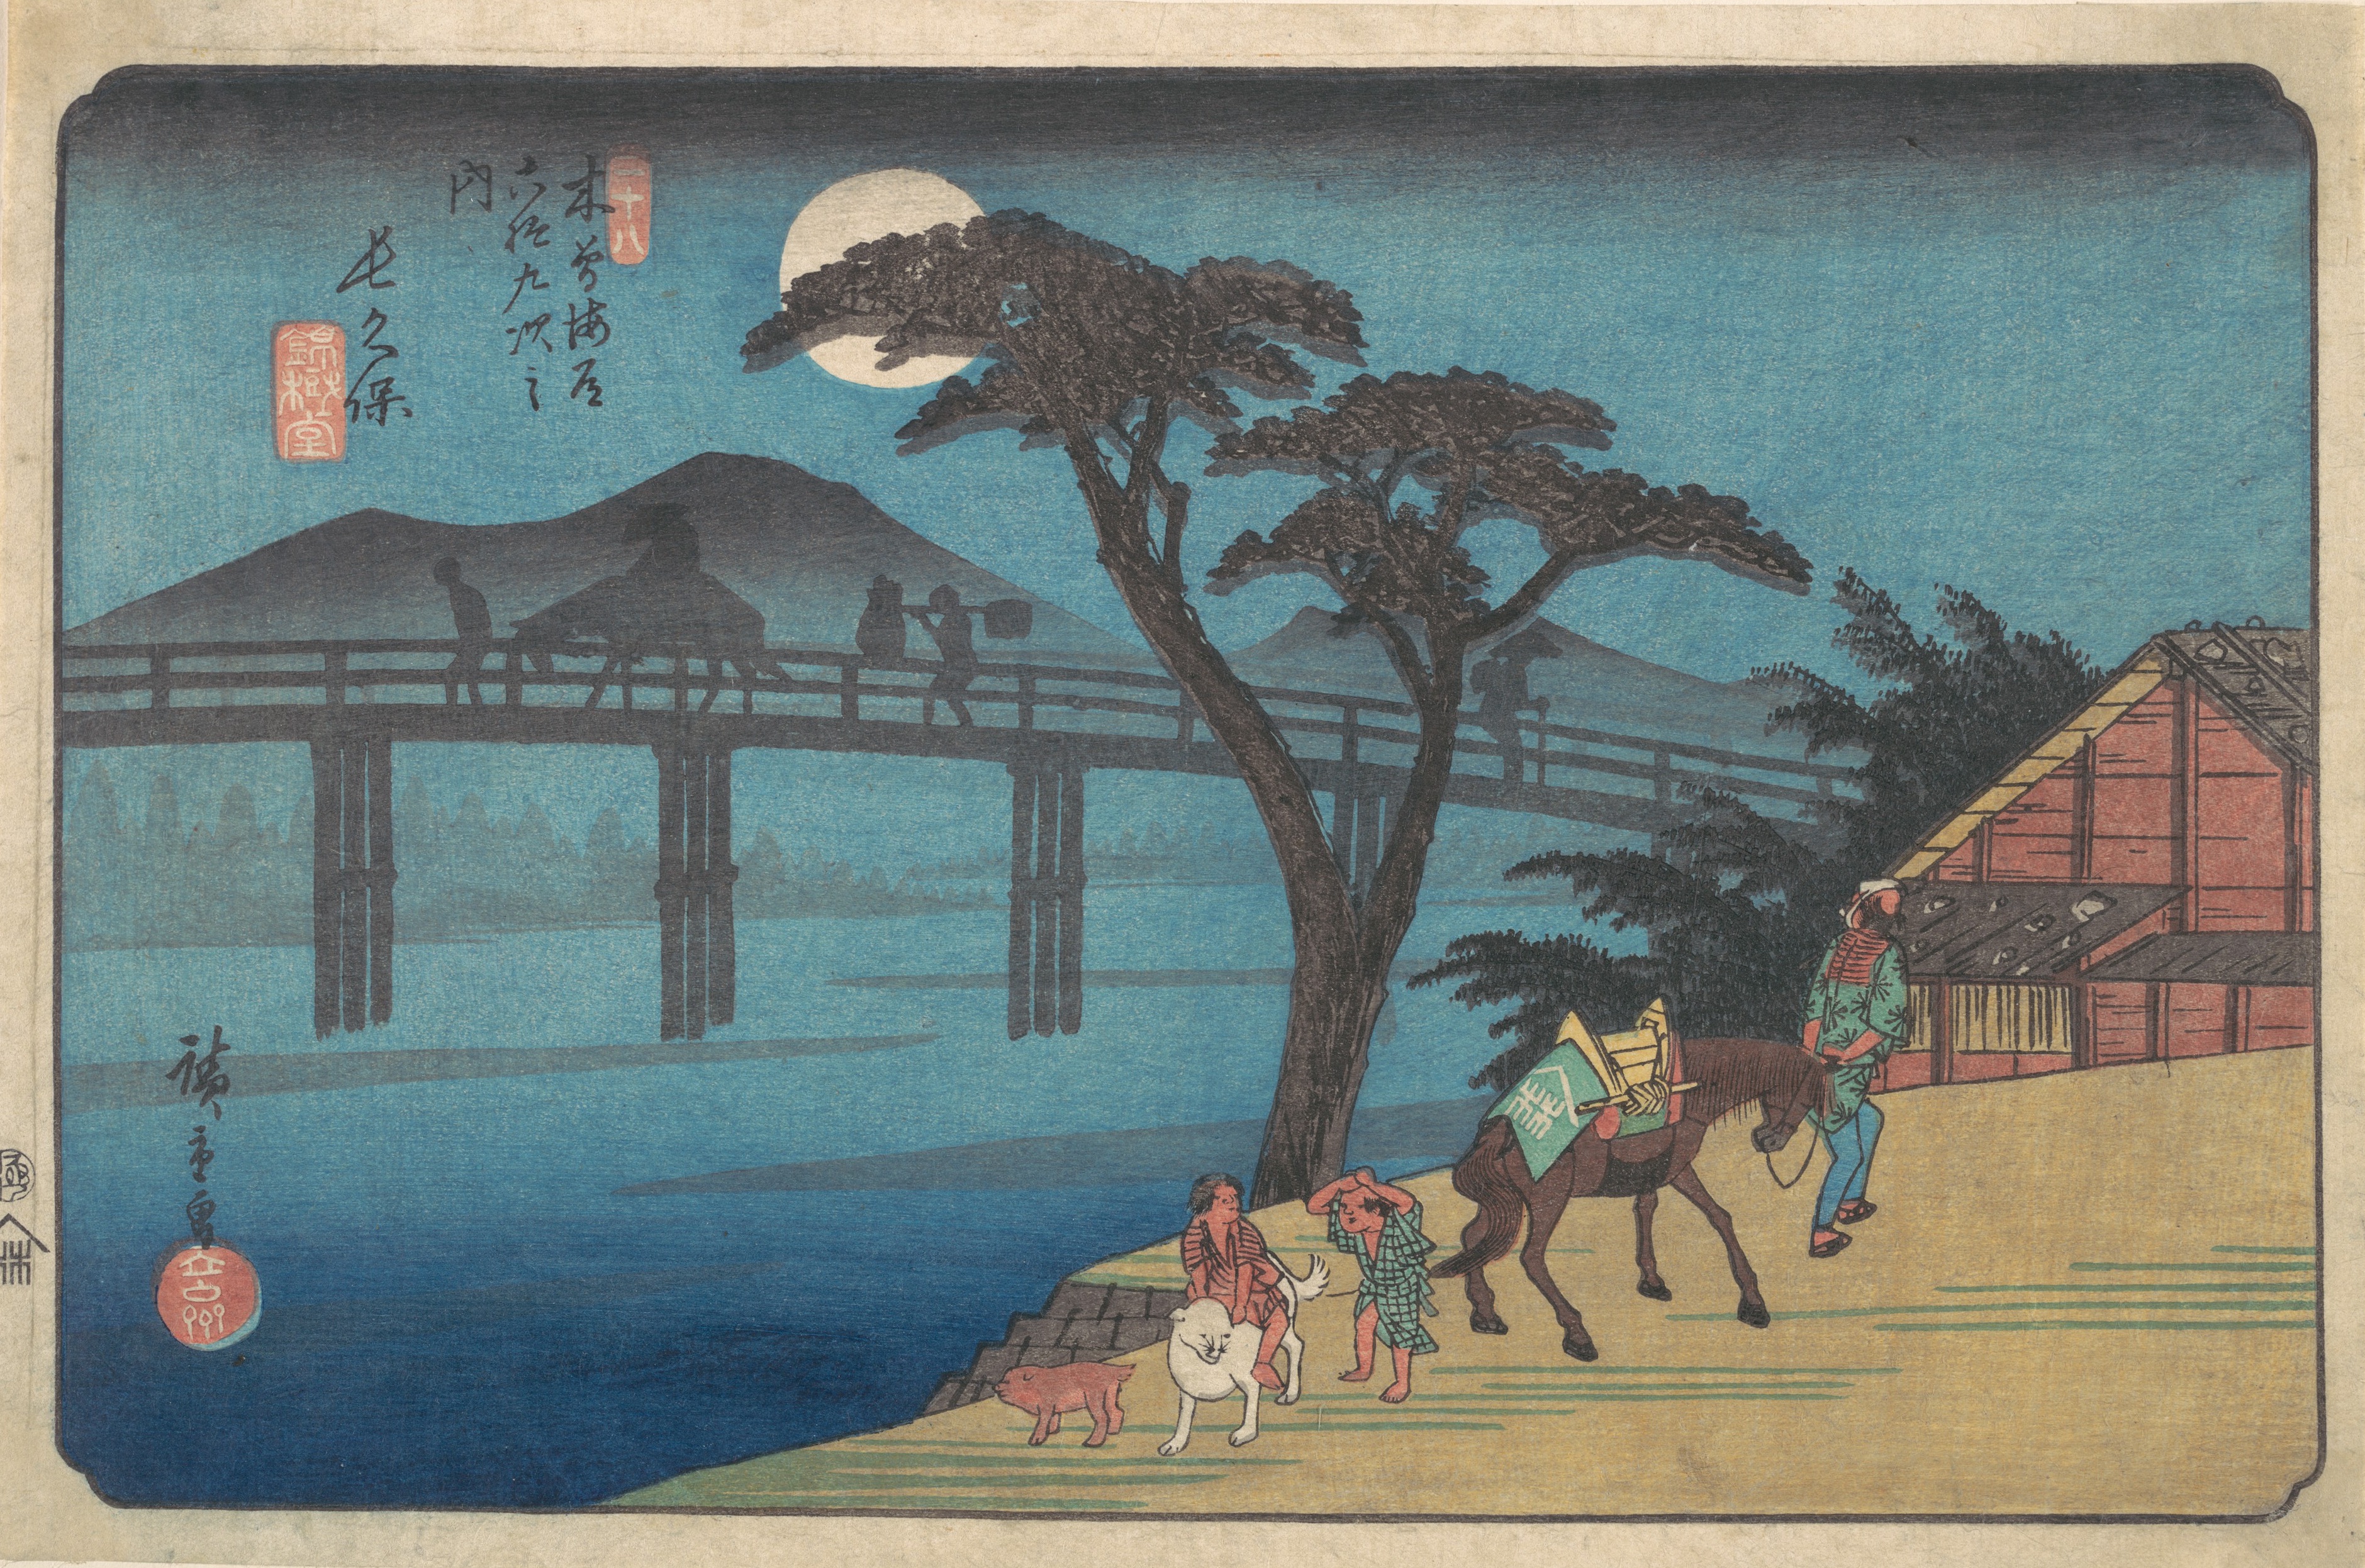 La stazione di Nagakubo by  Hiroshige - circa 1836 - 22.2 x 34.9 cm 